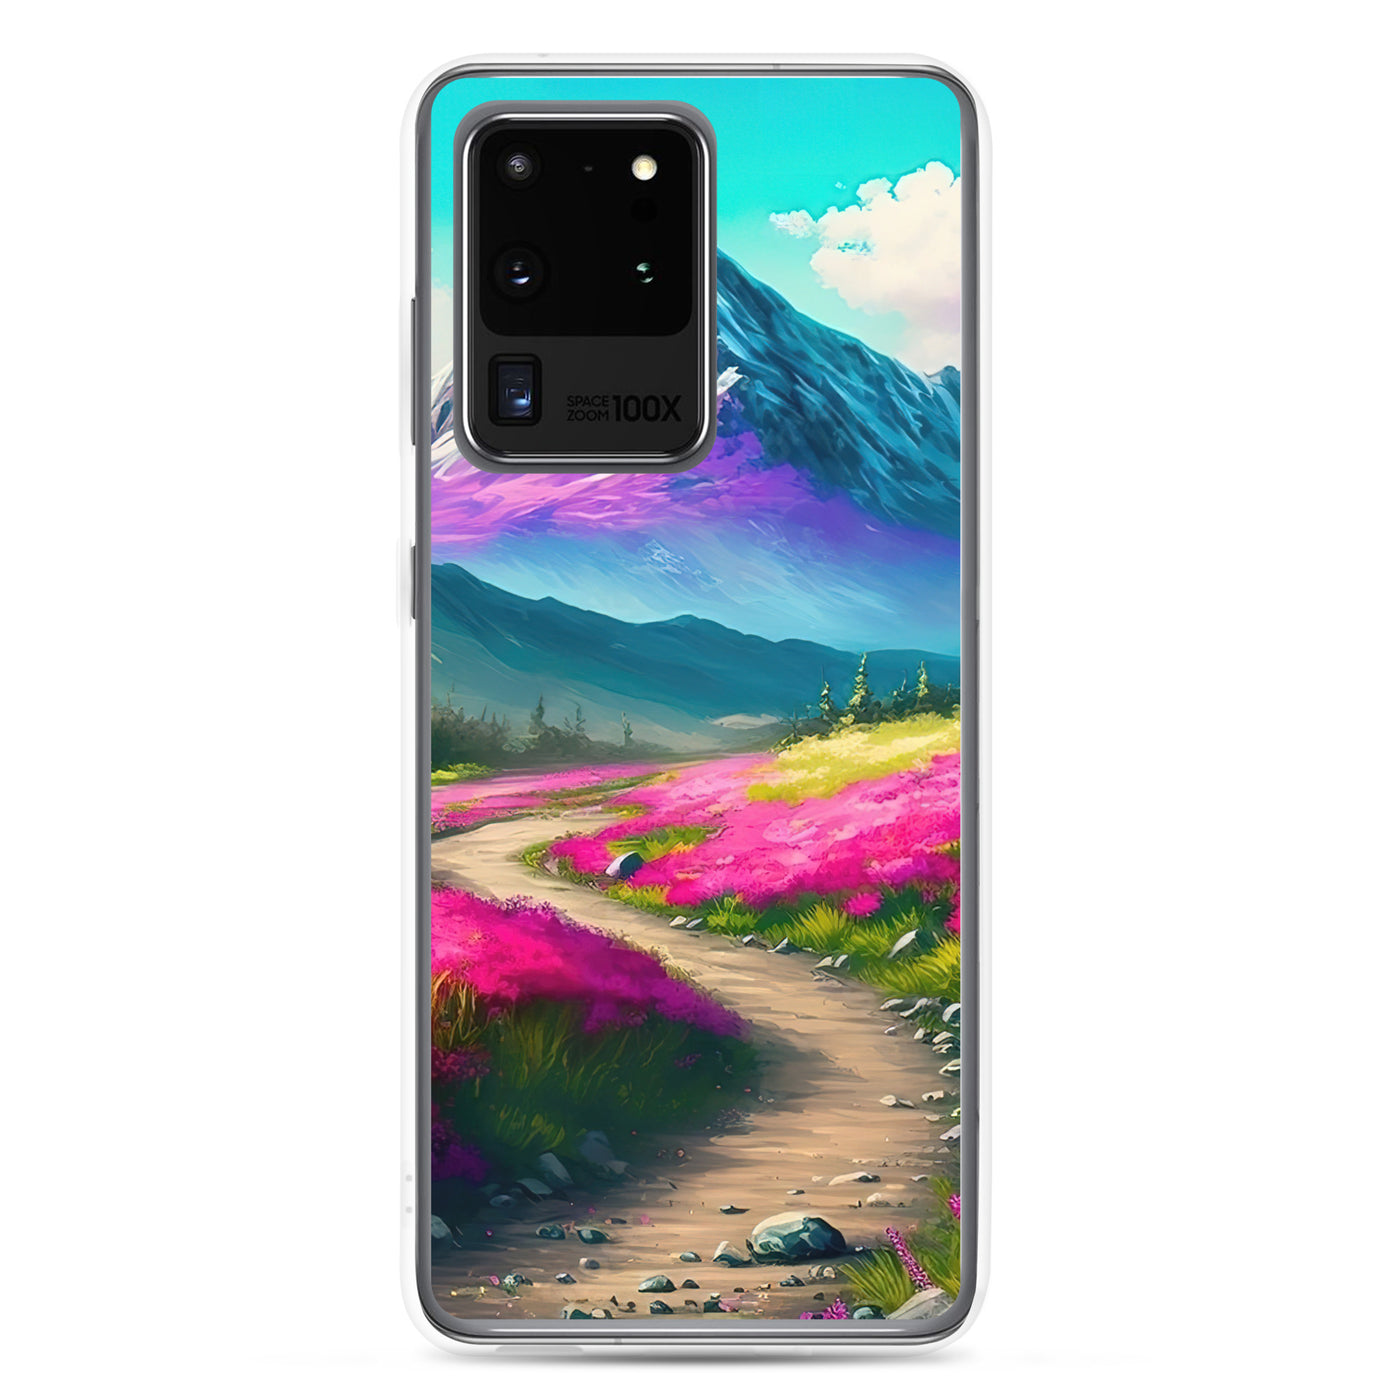 Berg, pinke Blumen und Wanderweg - Landschaftsmalerei - Samsung Schutzhülle (durchsichtig) berge xxx Samsung Galaxy S20 Ultra